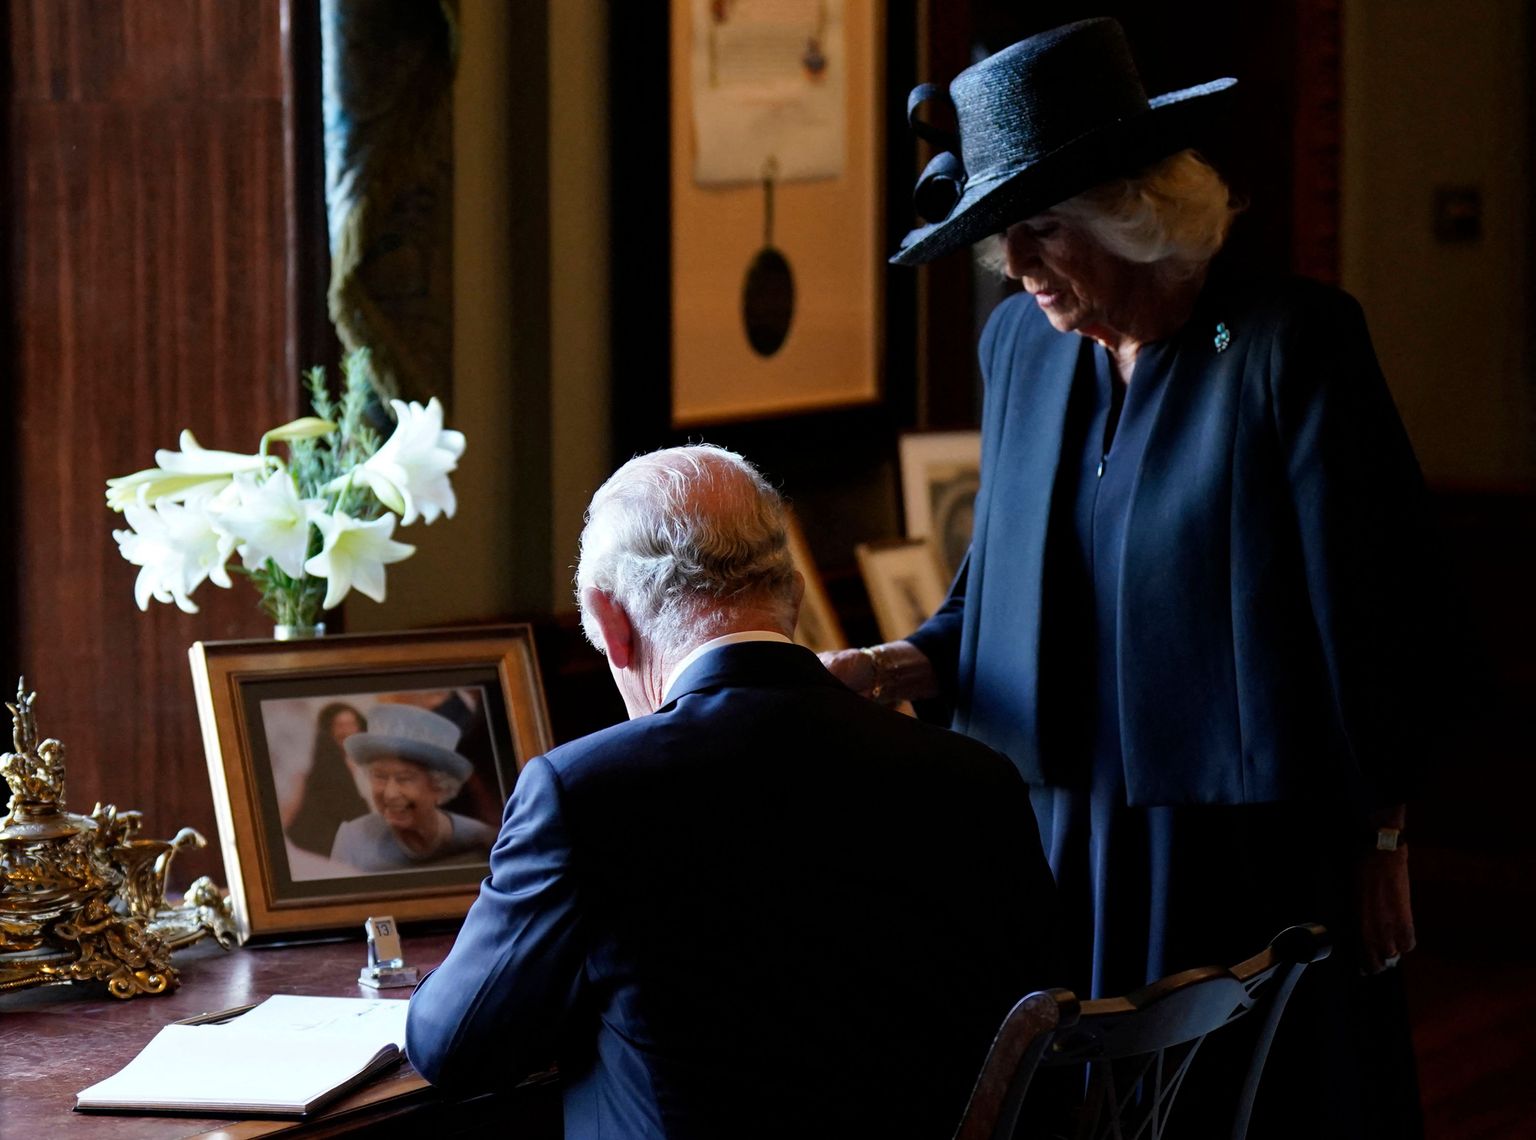 Briti uus kuningas Charles III andis 13. septembril 2022 Põhja-Iirimaal Belfasti lähedal Hillsborough' lossis allkirja külalisteraamatusse, kuid tal tekkis sulepeaga probleem. Ta naine Camilla tuli teda aitama. Laual on näha ka kuninganna Elizabeth II fotot